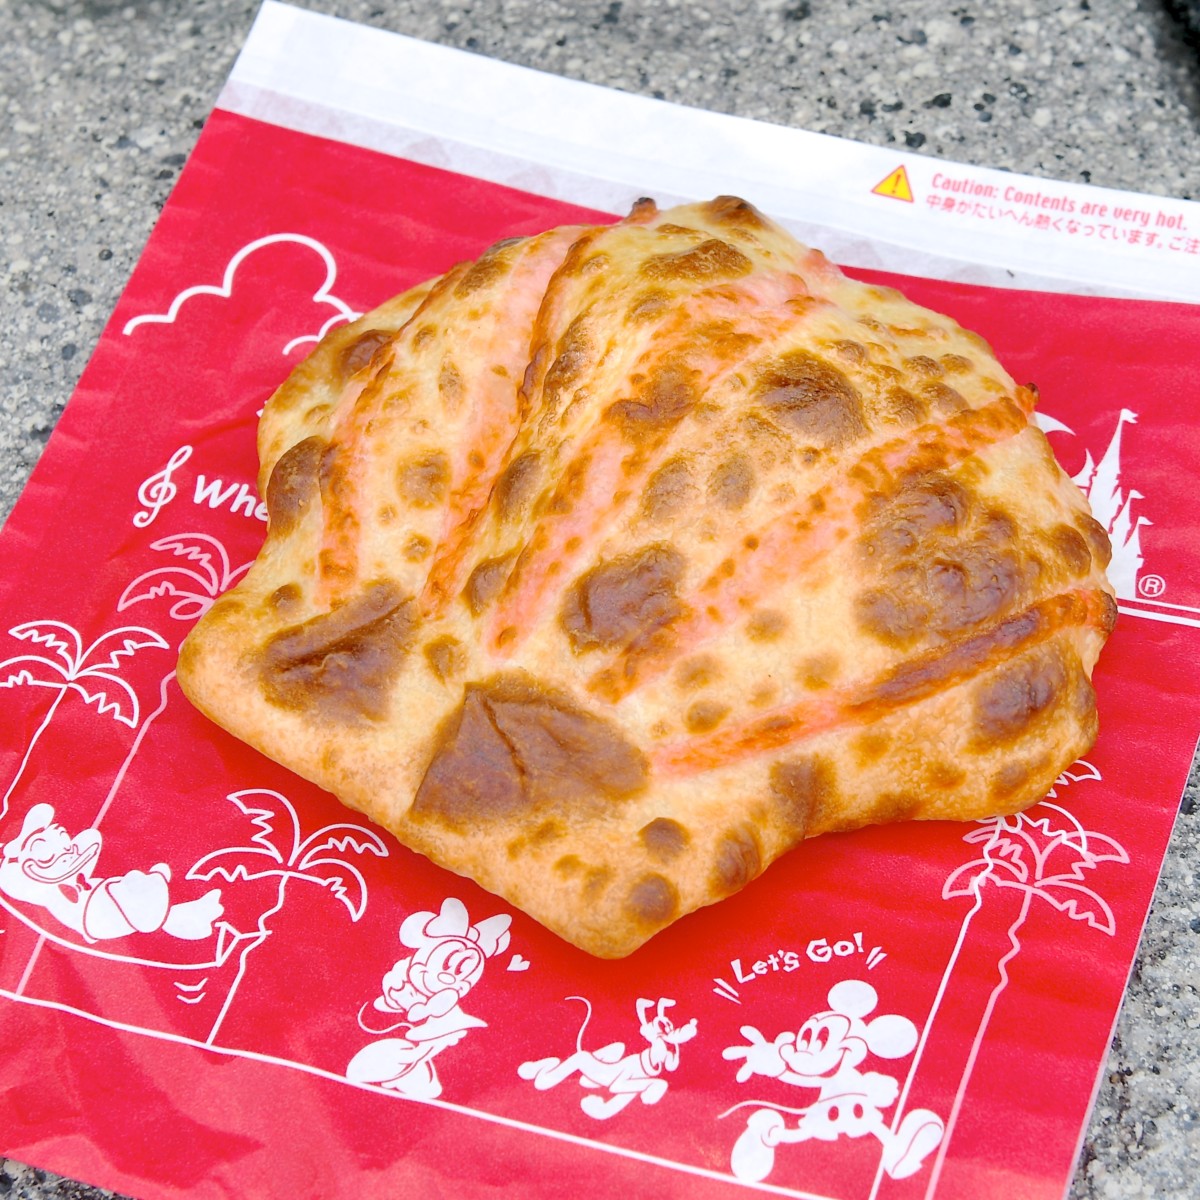 貝殻シェイプ 東京ディズニーシー セバスチャンのカリプソキッチン シーフードクリームのカルツォーネ マジカルシェルスープ ワカメ